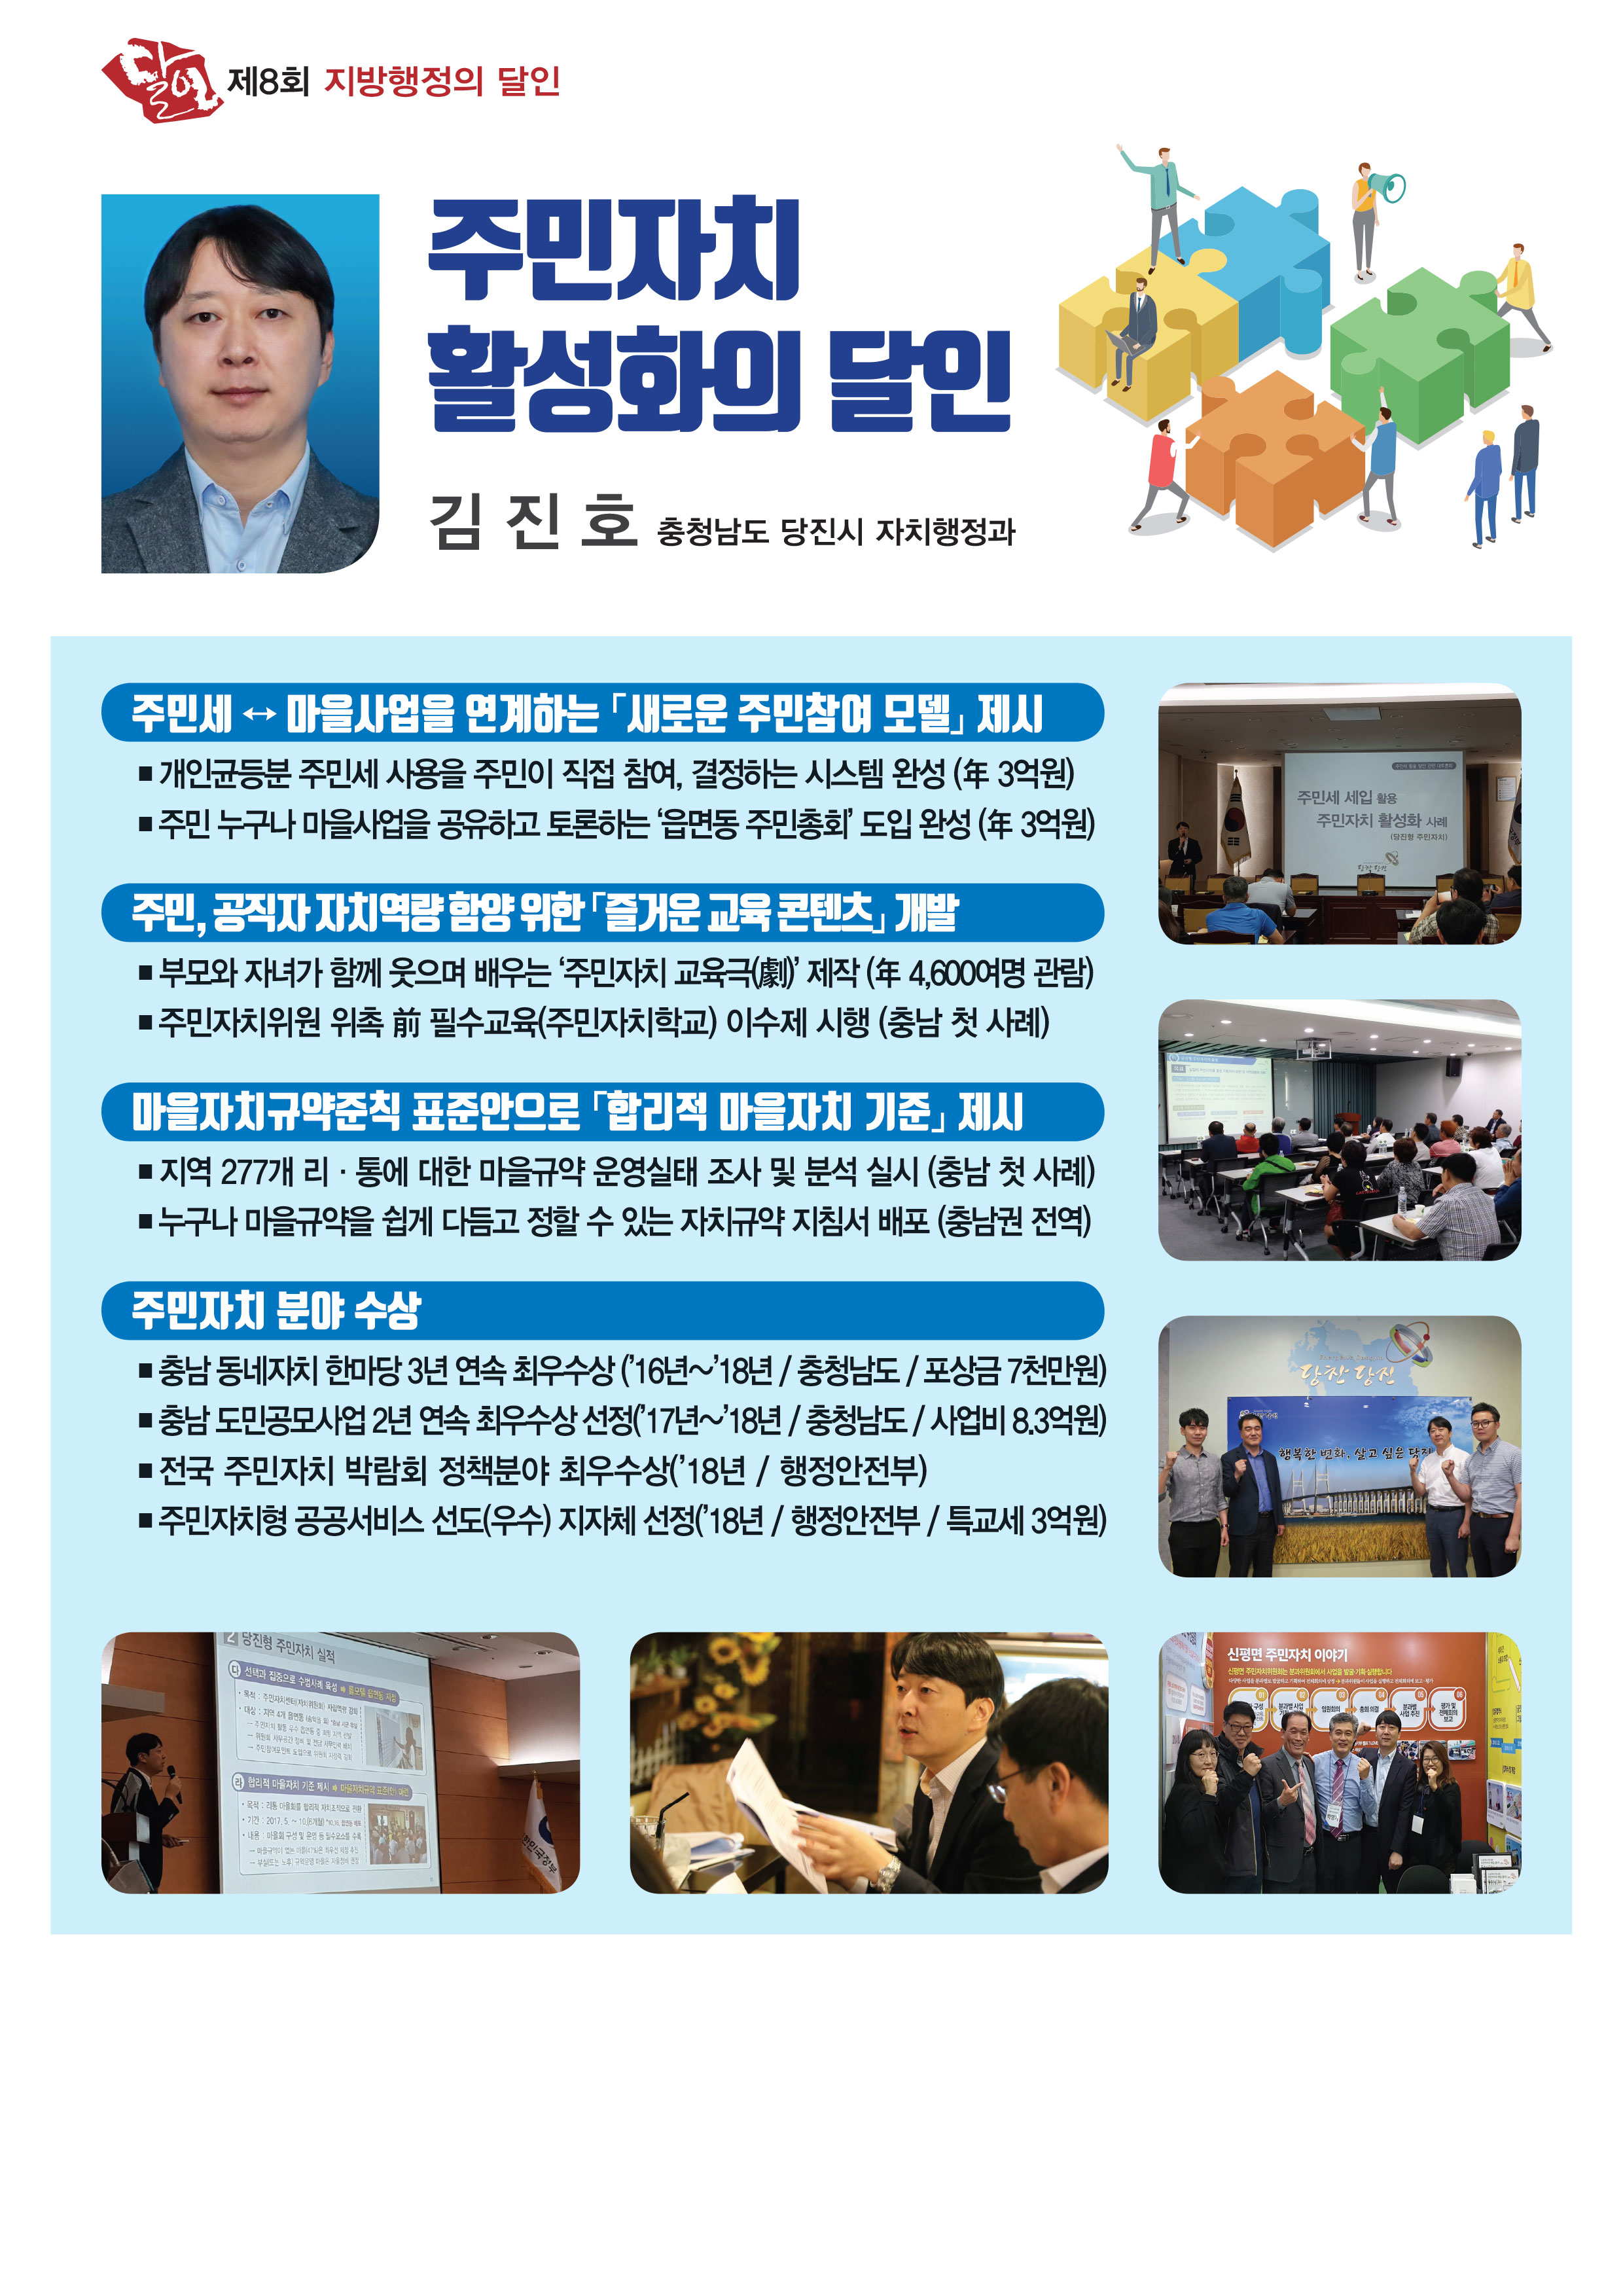 제8회 지방행정의 달인 - 주민자치 활성화의 달인 김진호